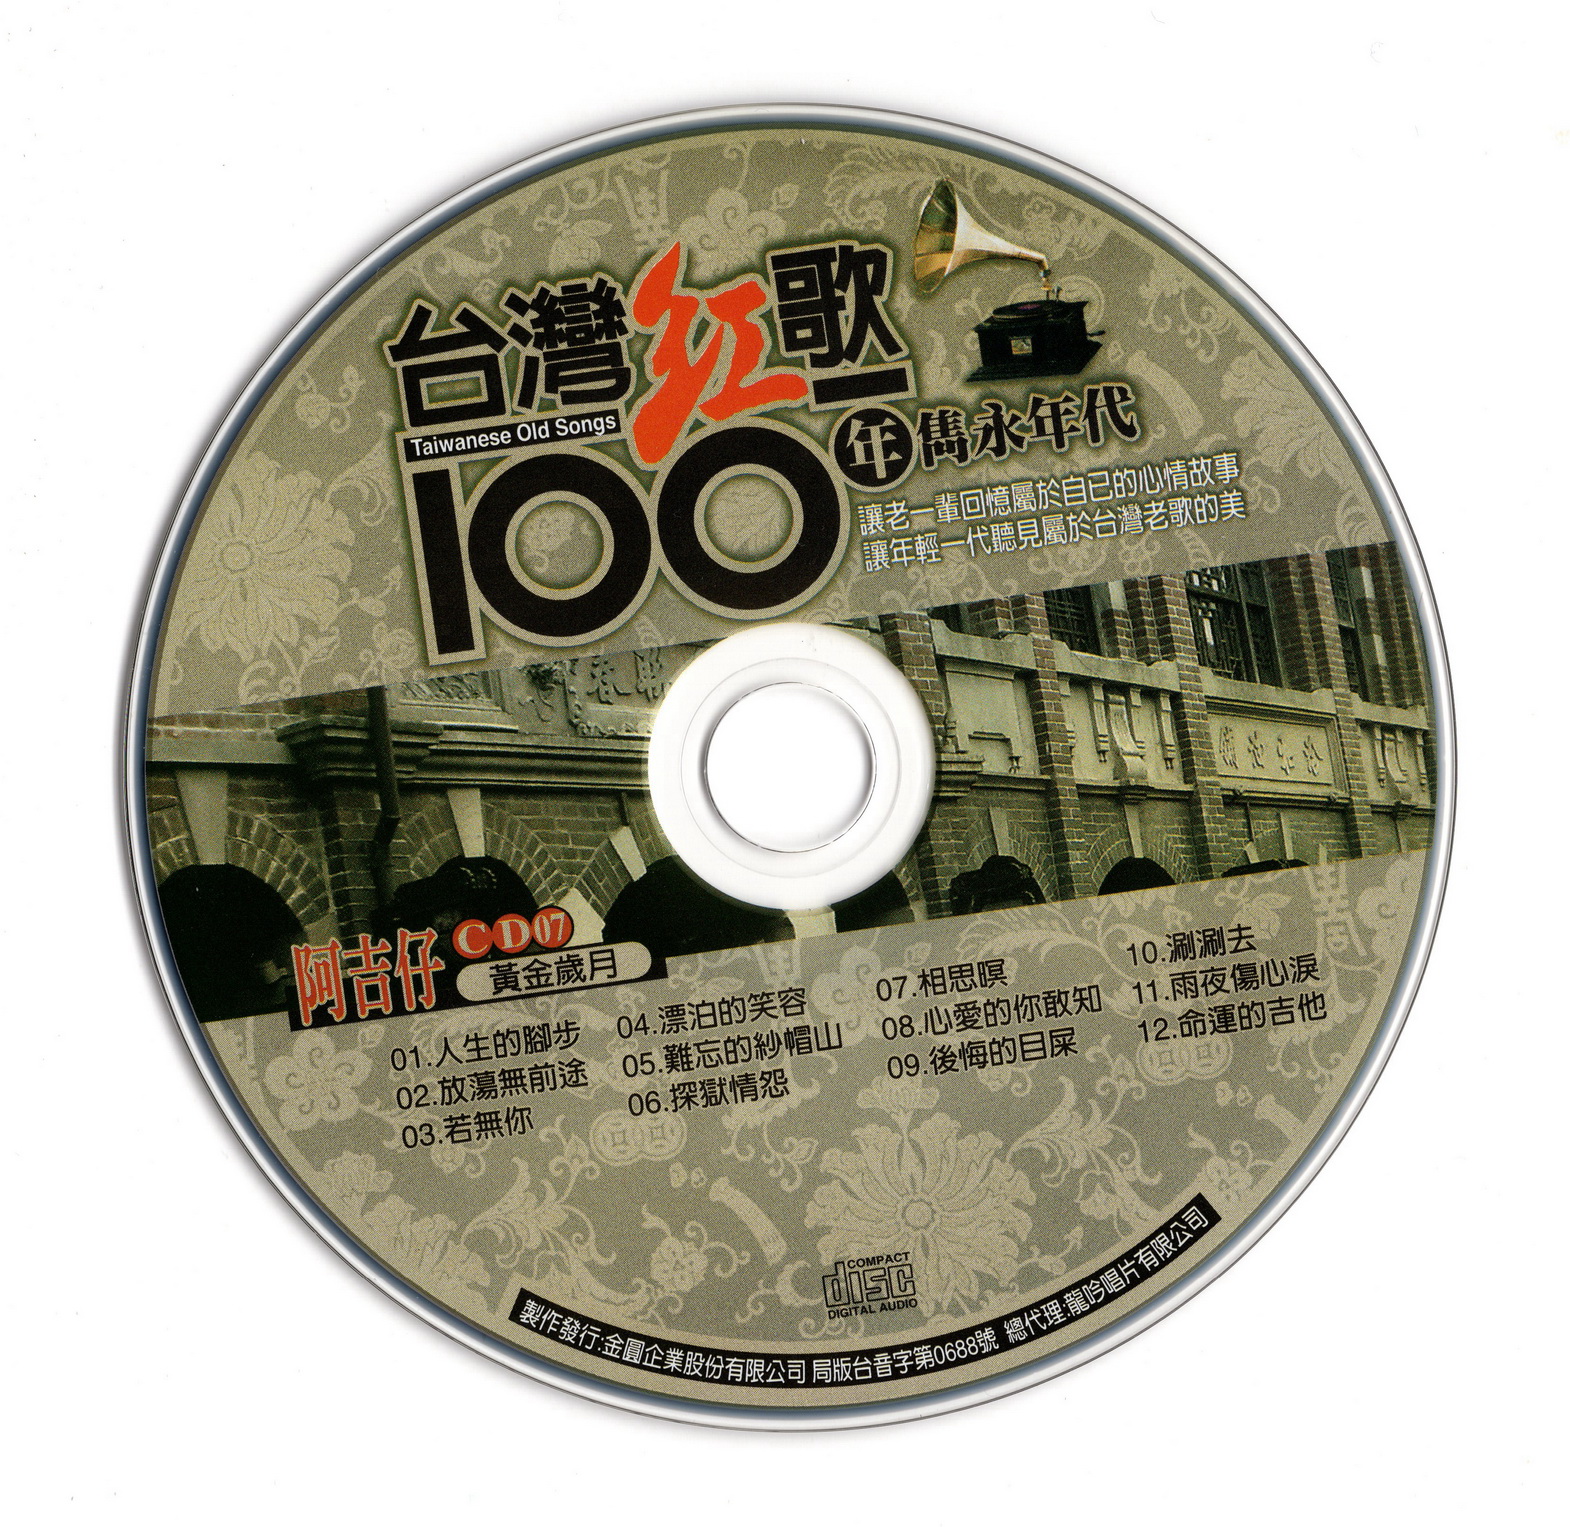 群星-台湾红歌100年 隽永年代 20CD合集[无损WAV/9.83GB]百度云盘打包下载 影音资源 第3张